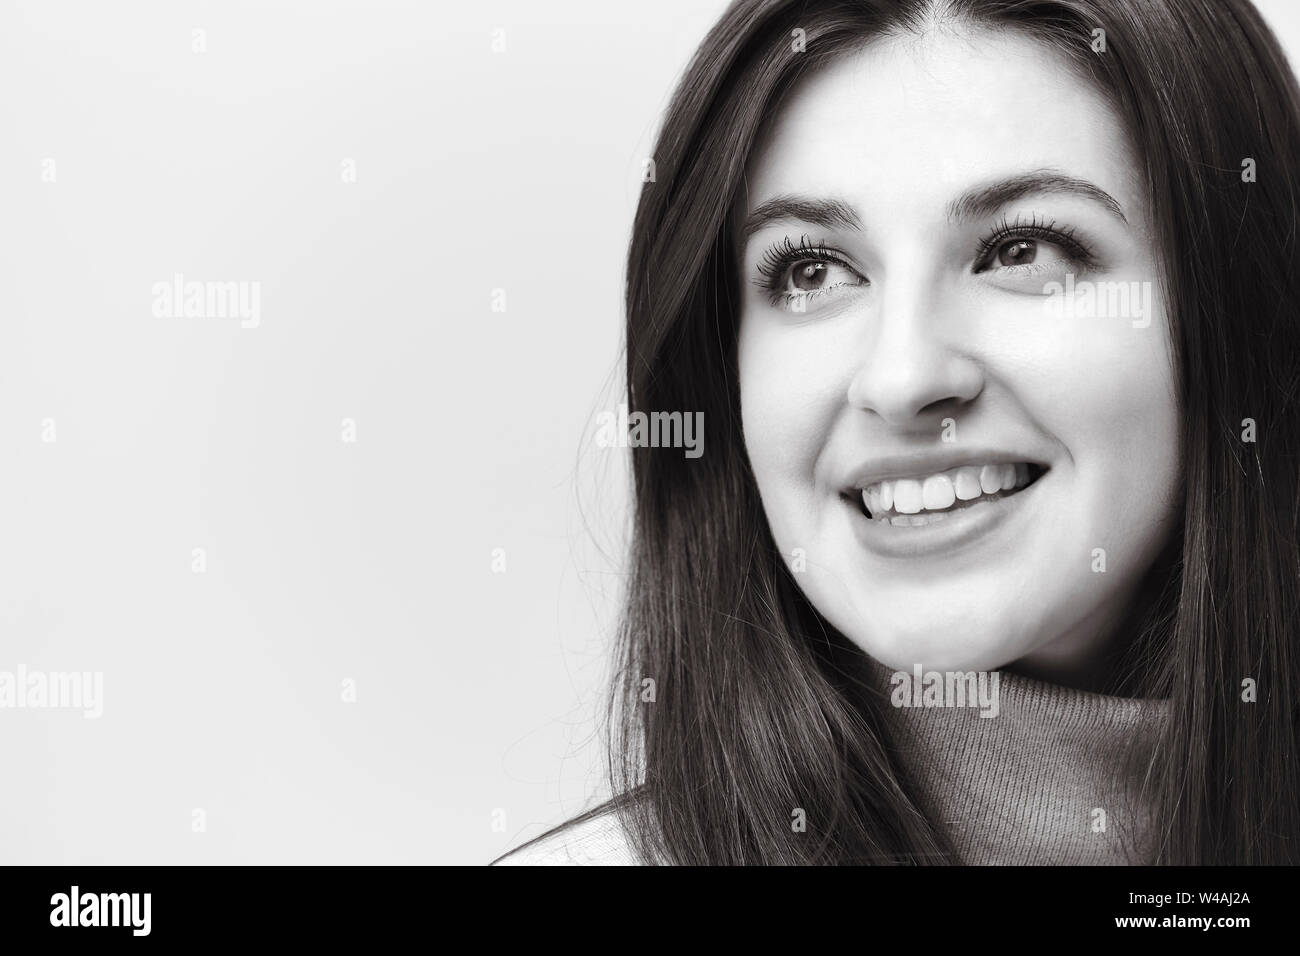 Bianco e nero ritratto di una bella donna caucasica, guardando lontano sorridente Foto Stock